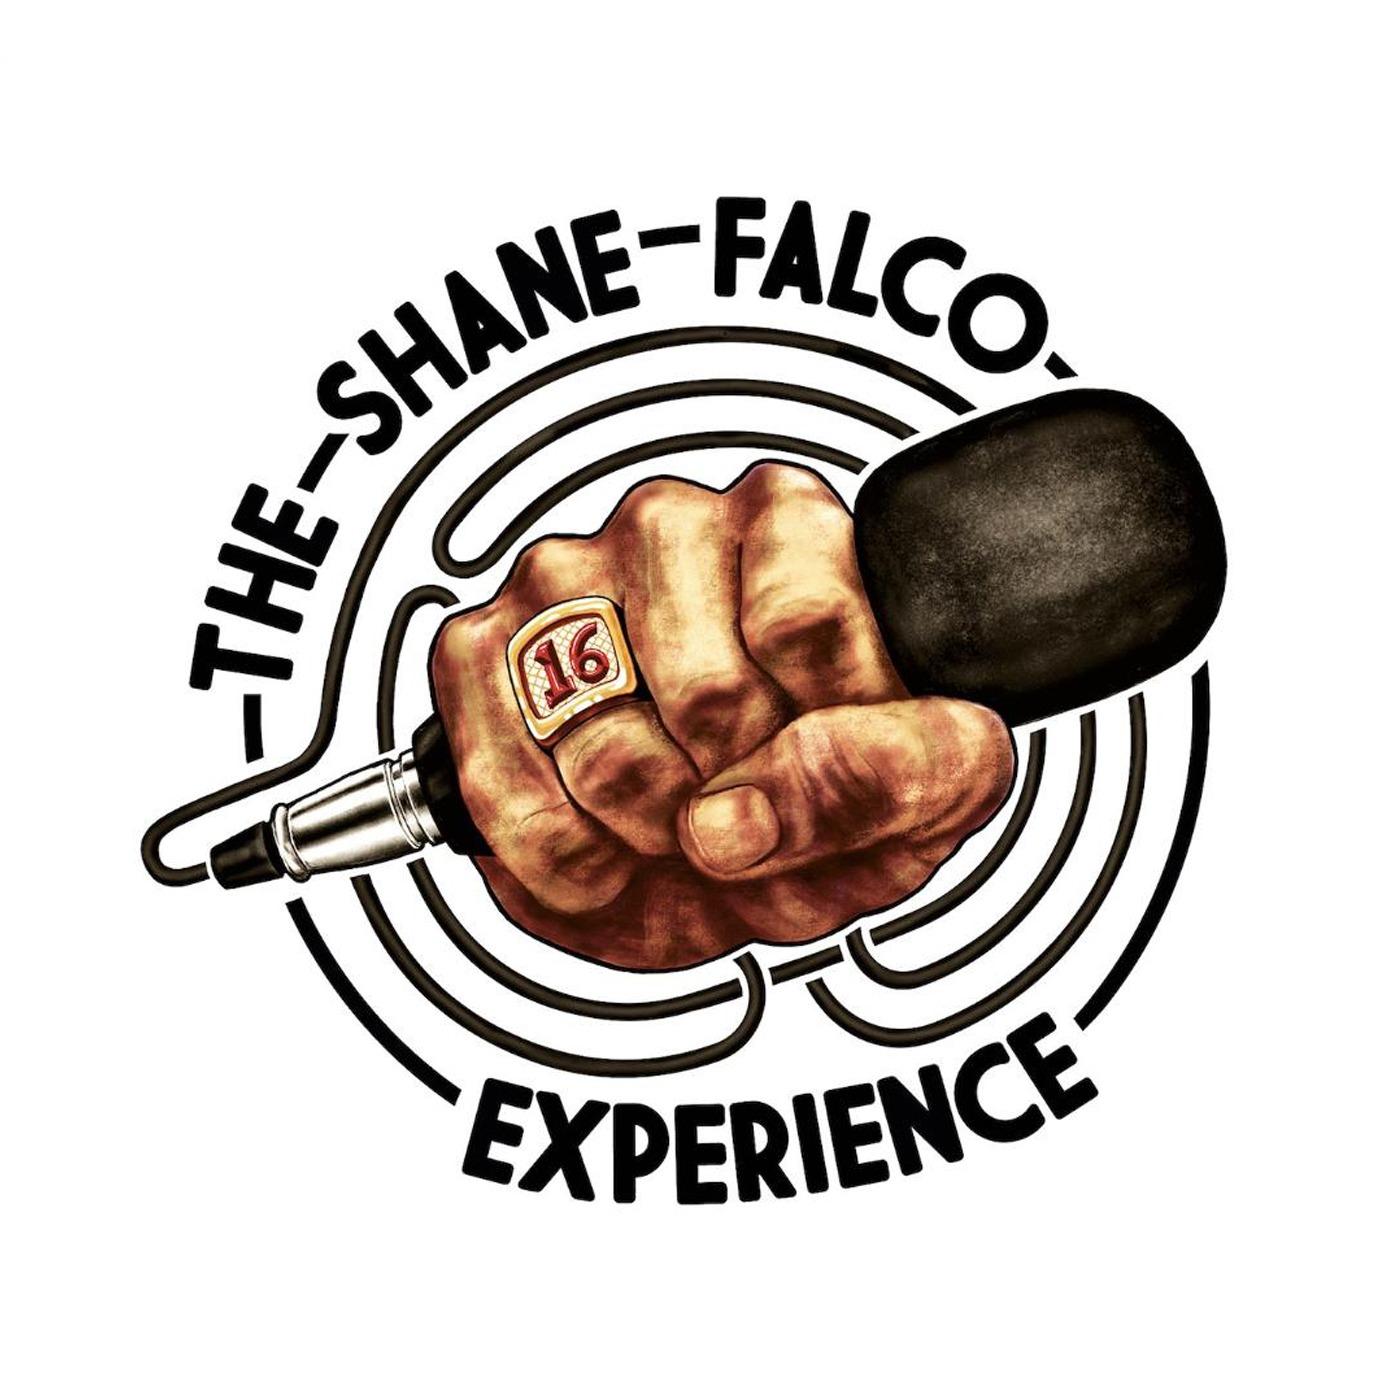 The Shane Falco Experience